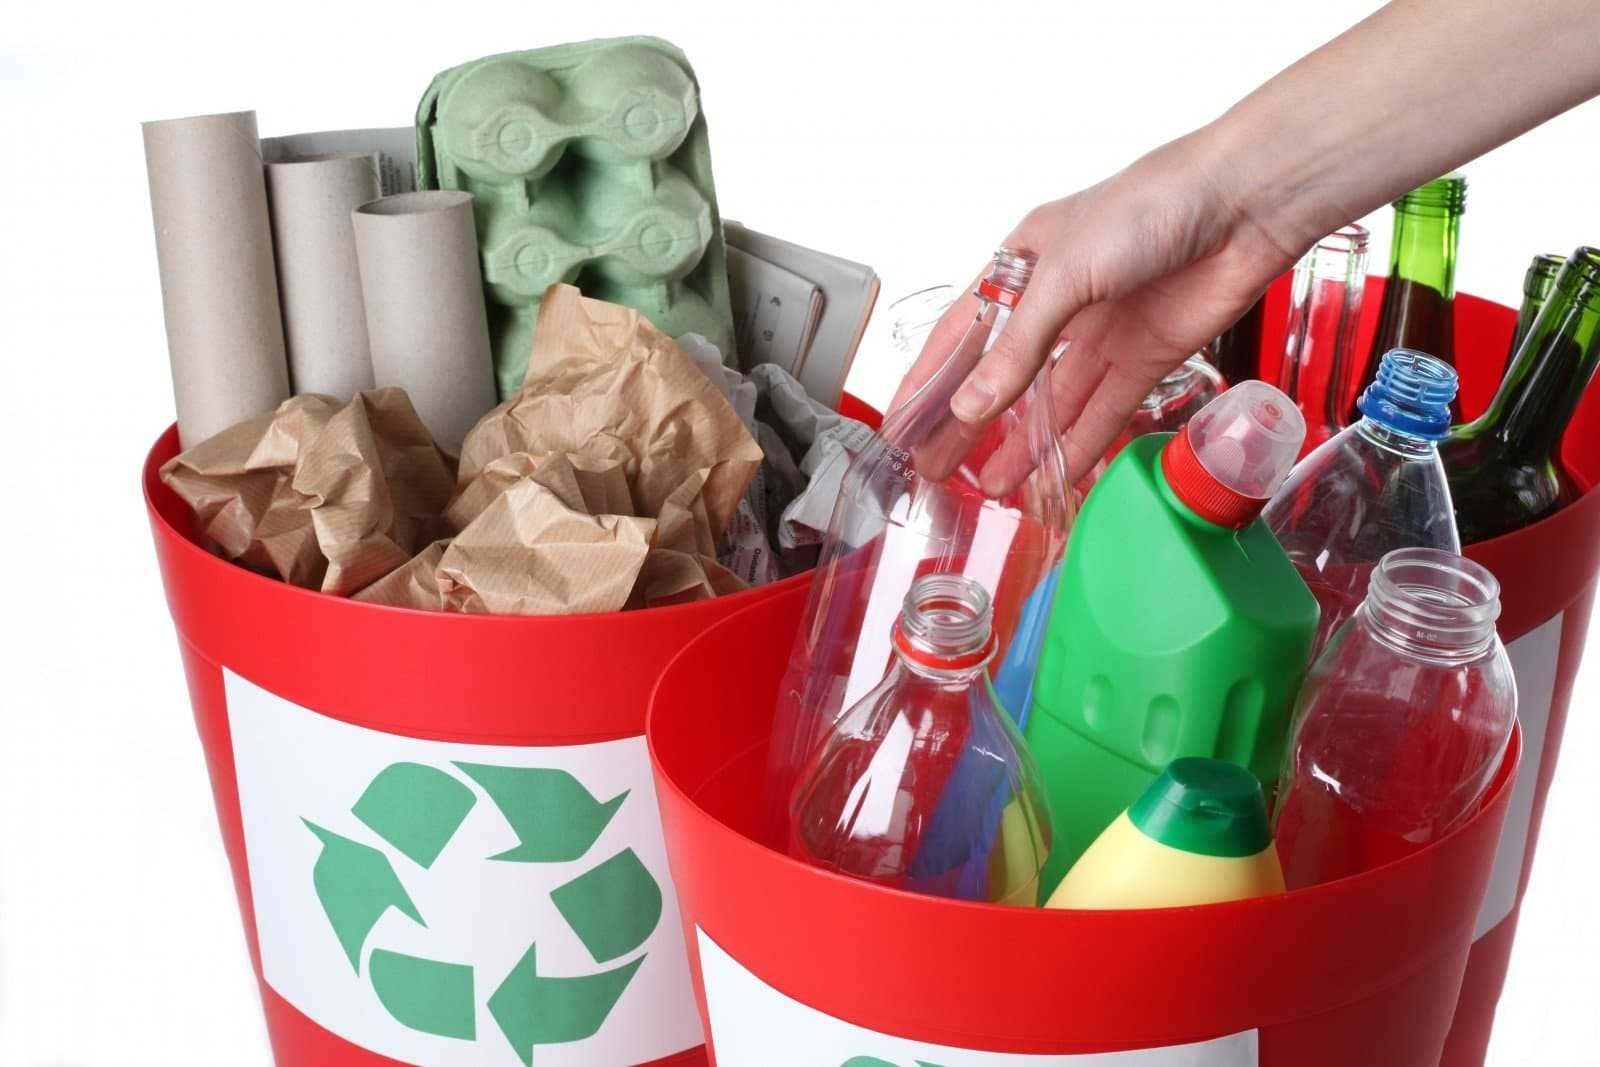 We should recycle. Сортировка мусора. Сортировка и утилизация мусора. Утилизация бытовых отходов. Сортировка пластикового мусора.